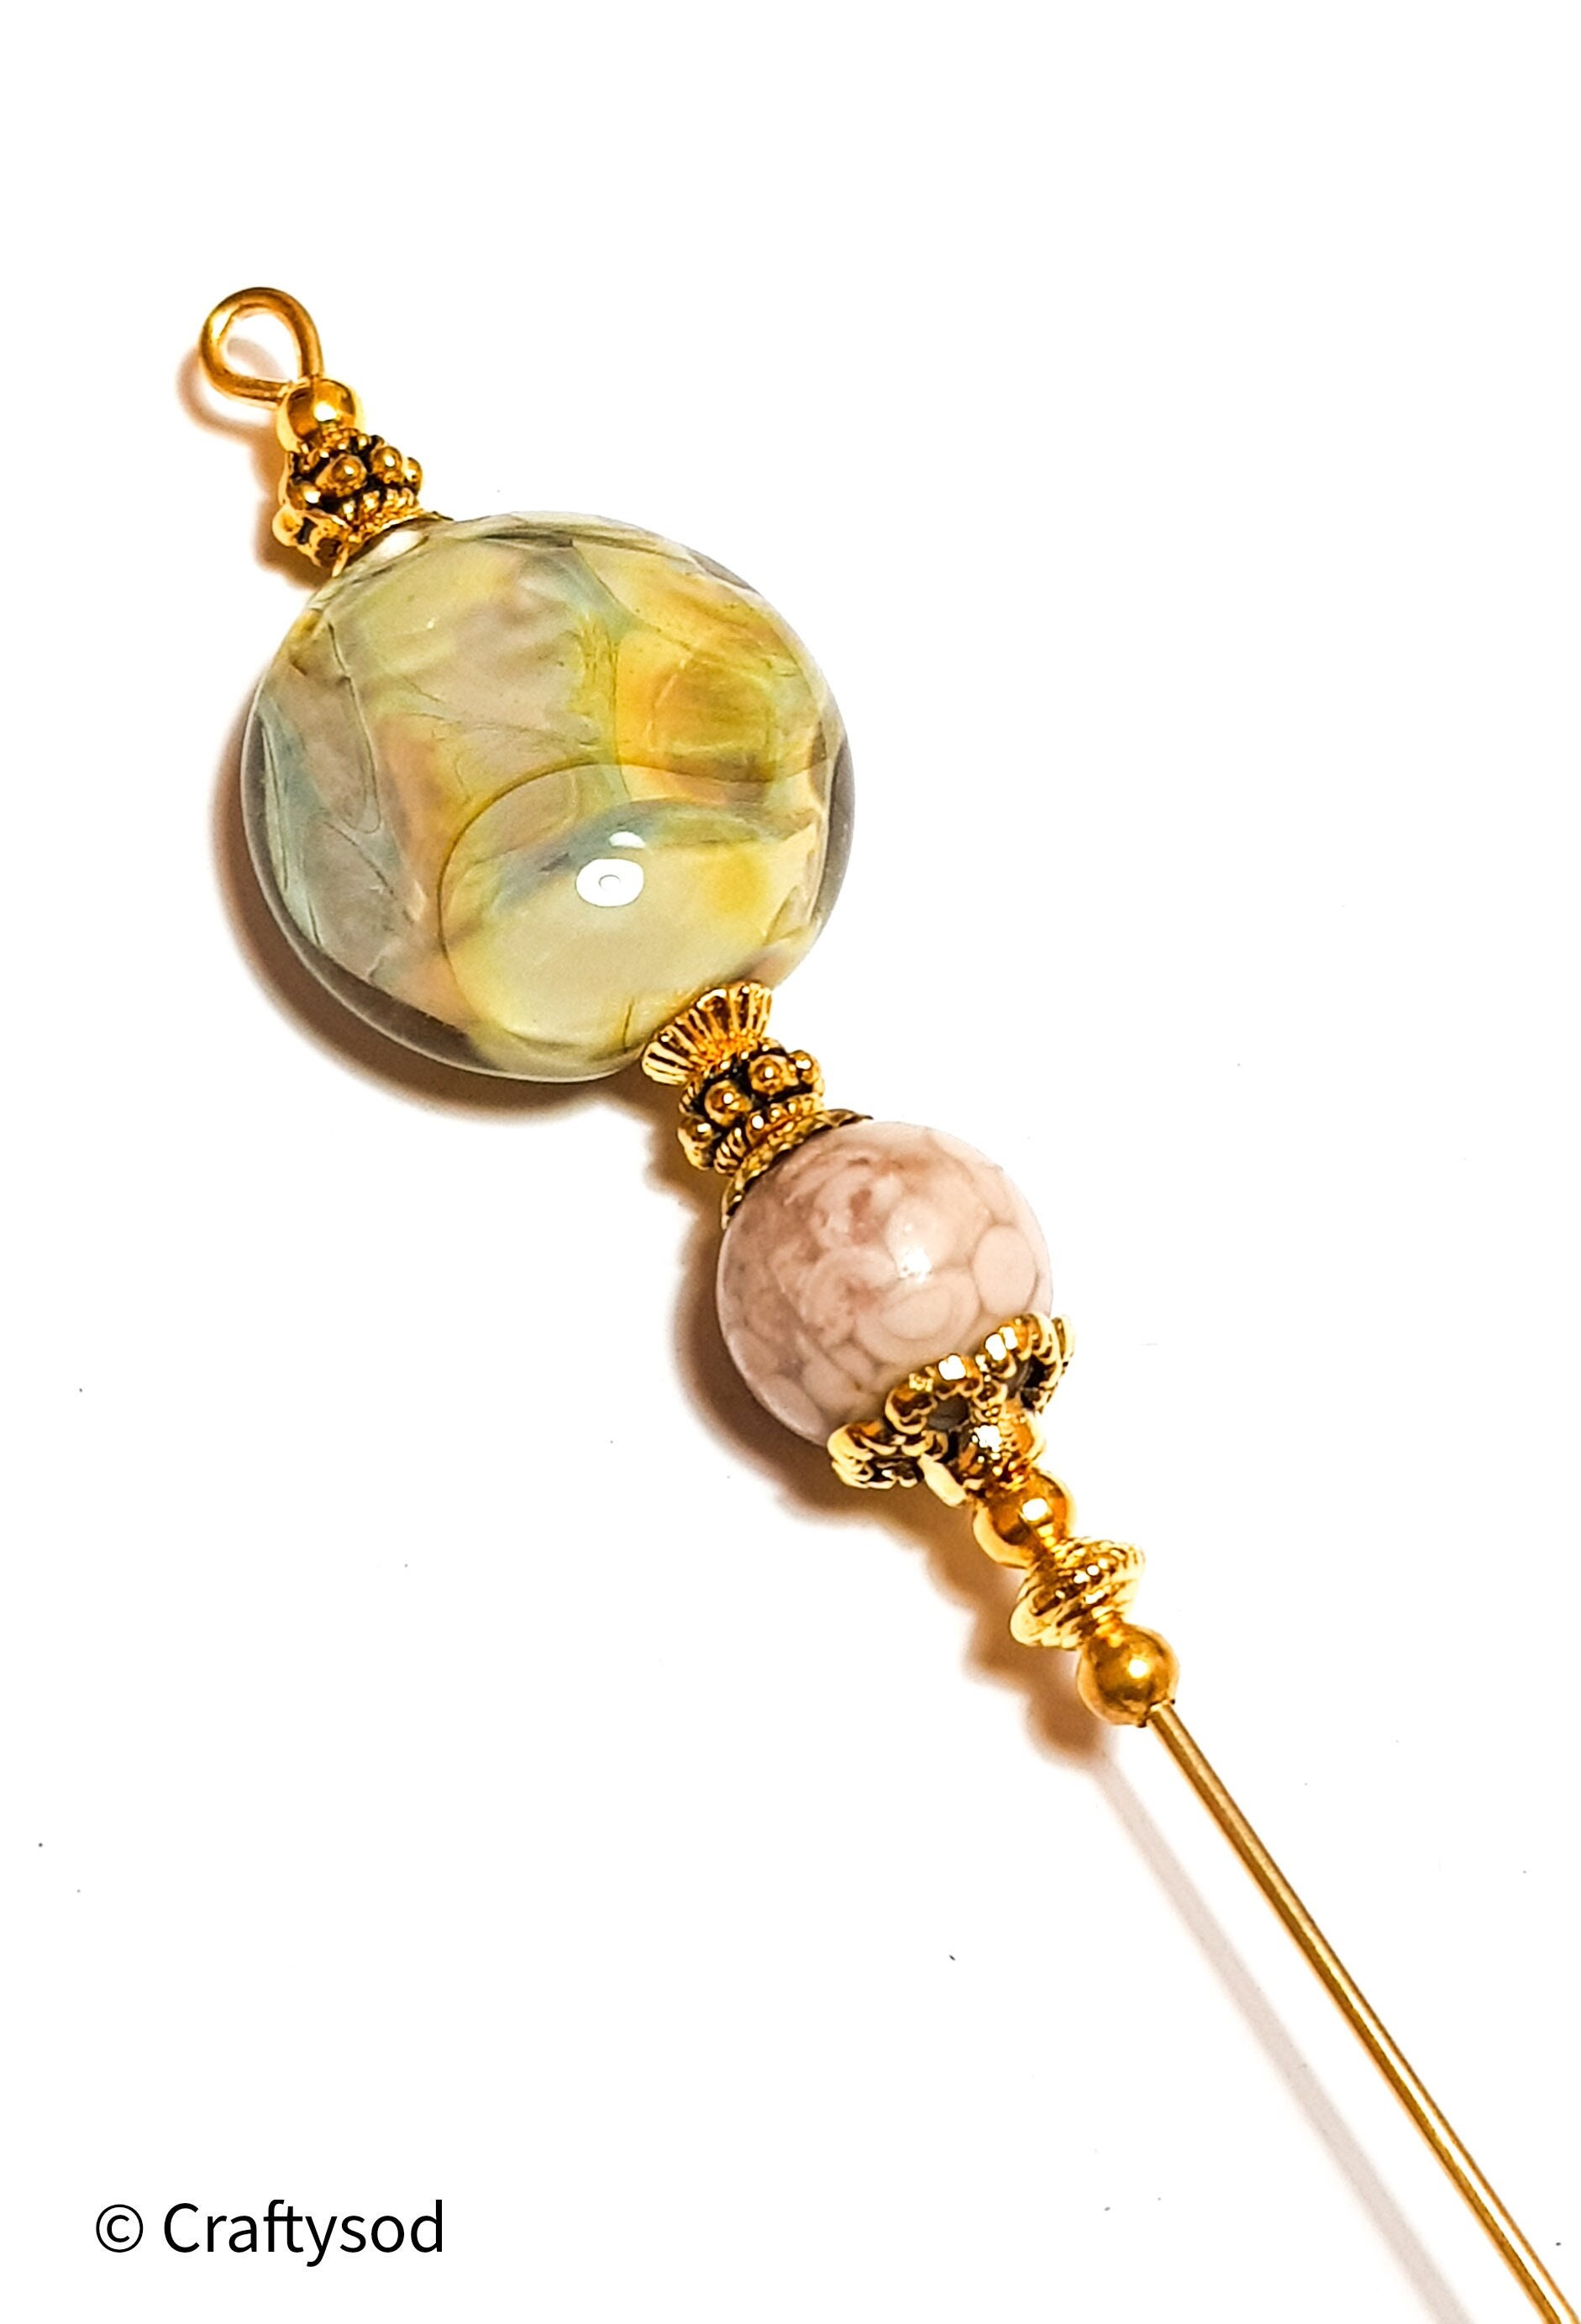 5" Gold Marmorierte Stil Glas & Maifanit Edelstein Handgemacht Lampwork Bead Hat Pin - Mit Endschutz von CraftysodJewellery1